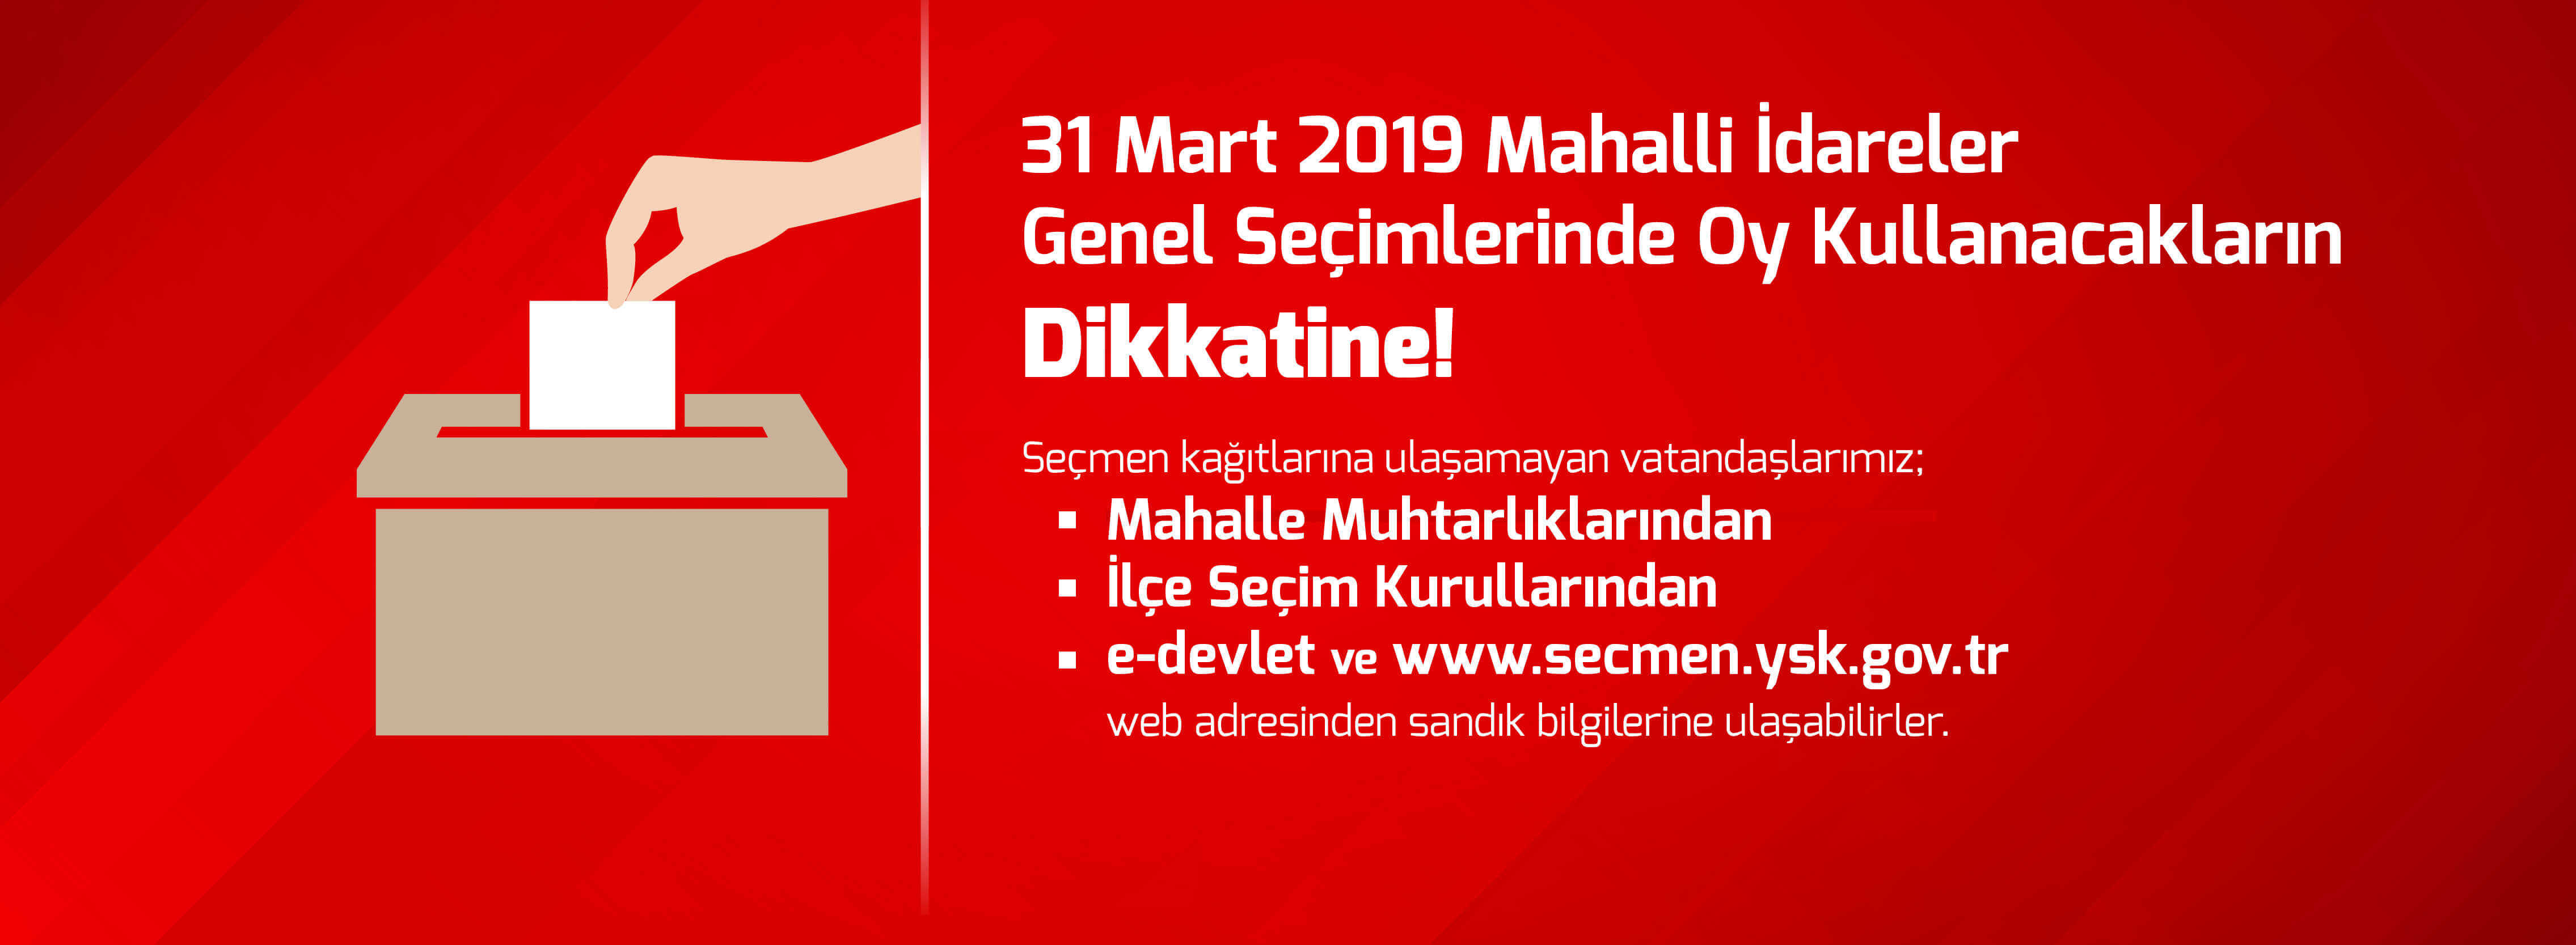 31 Mart 2019 Mahalli İdareler Genel Seçimlerinde Oy Kullanacakların Dikkatine!